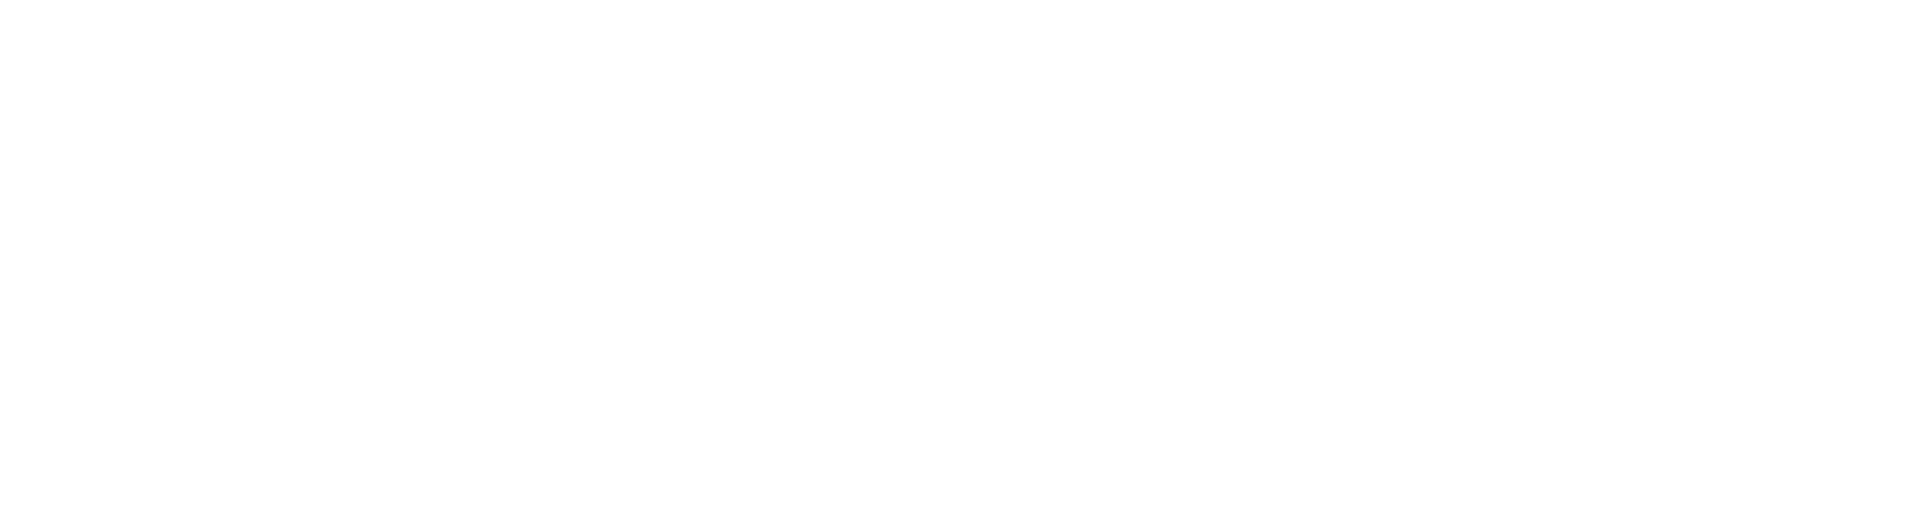 2D Minimalist Sunsets - Unity 2D Backgrounds Pack